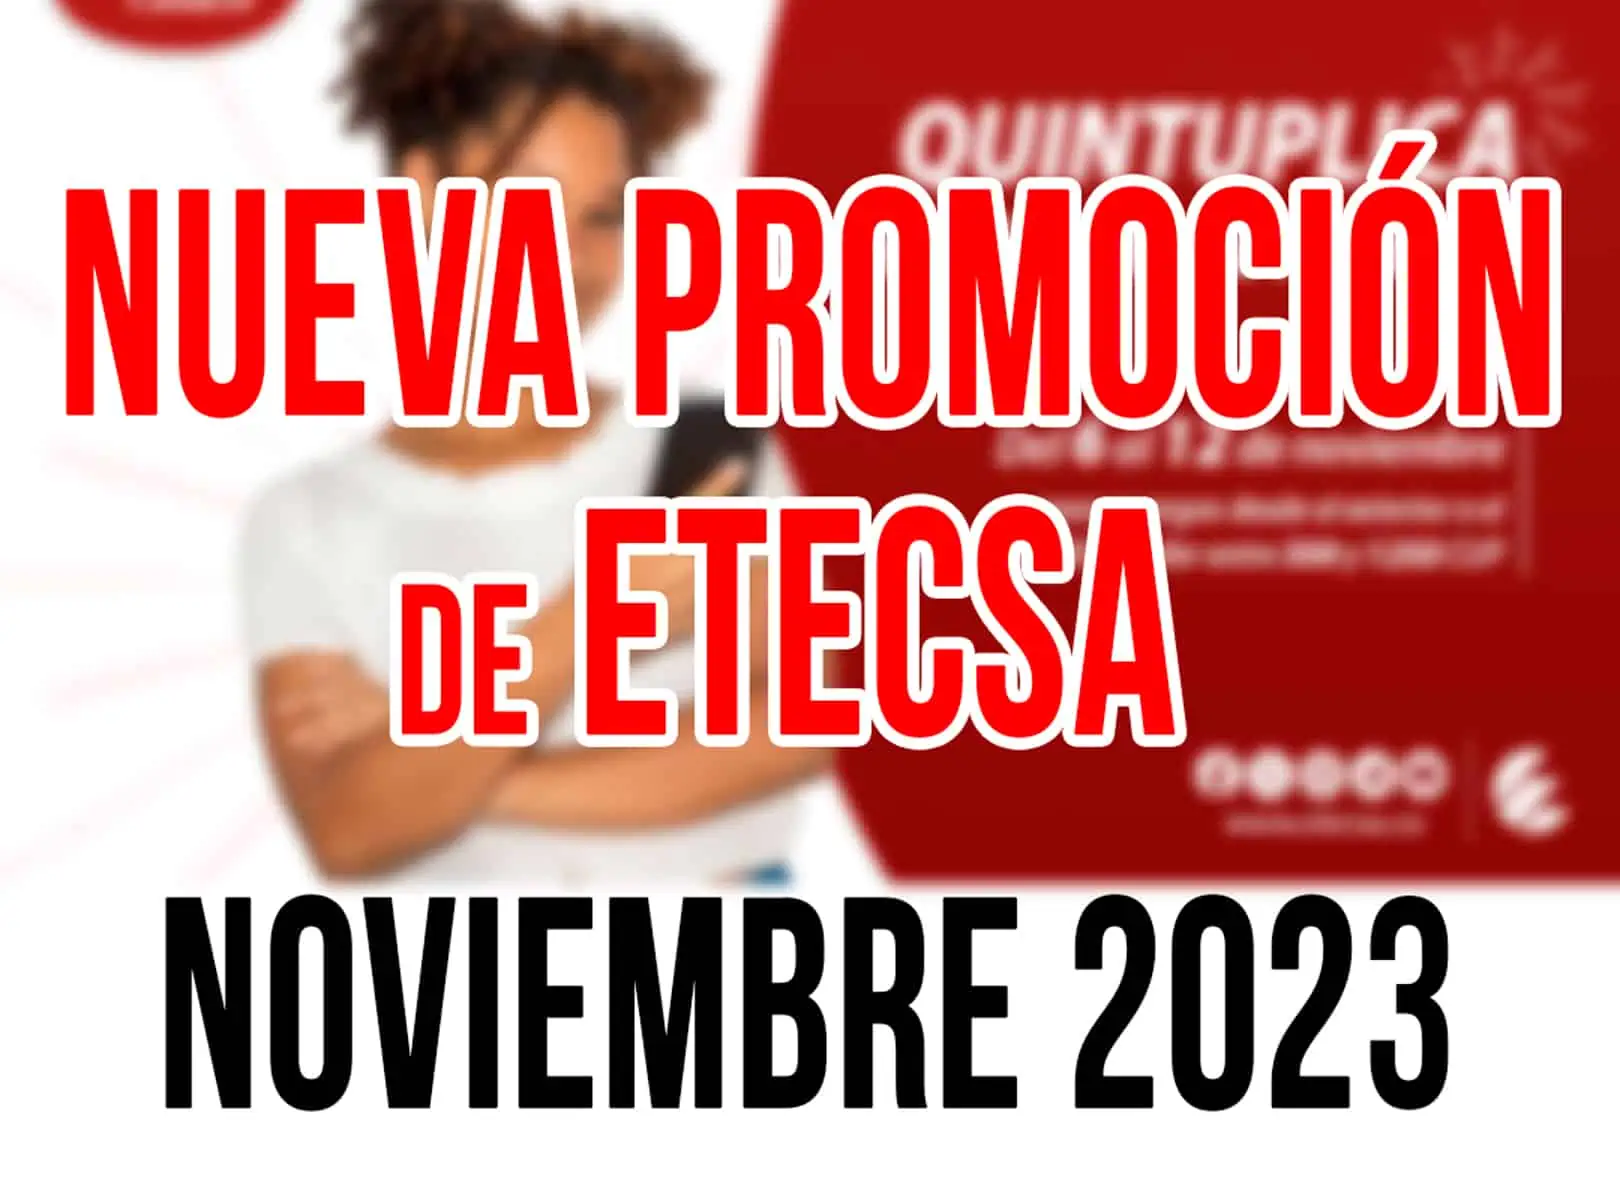 Aquí Está la Nueva Promoción de Recarga Internacional de ETECSA para Noviembre 2023